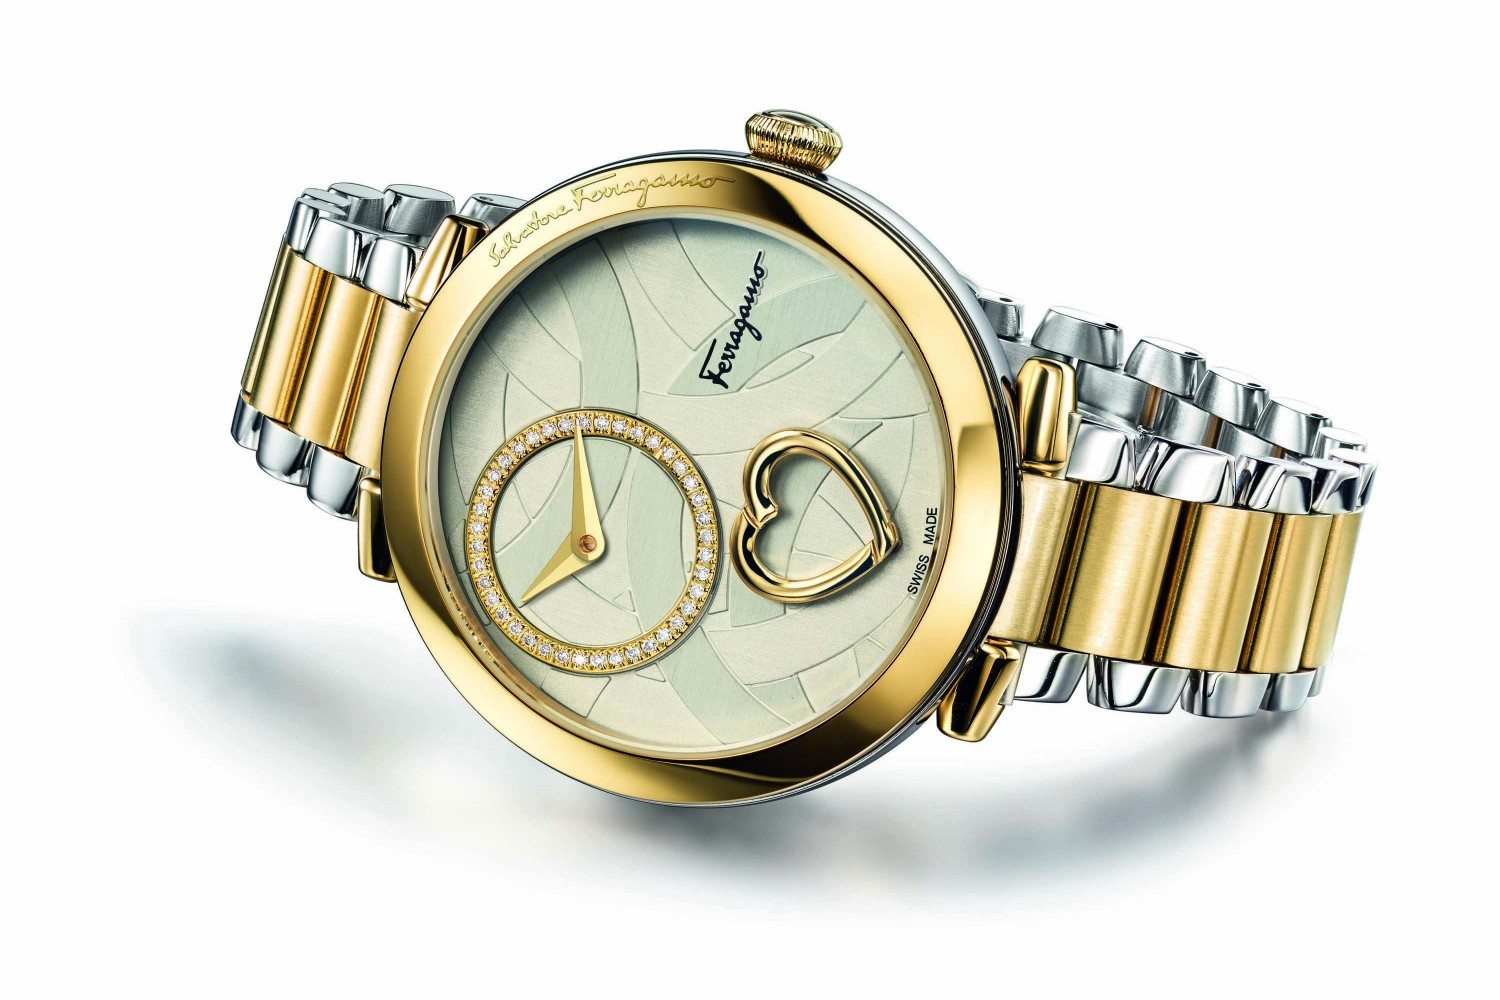 ACCESSORY SPOTLIGHT: A look at Salvatore Ferragamo’s Timepiece Collection Cuore